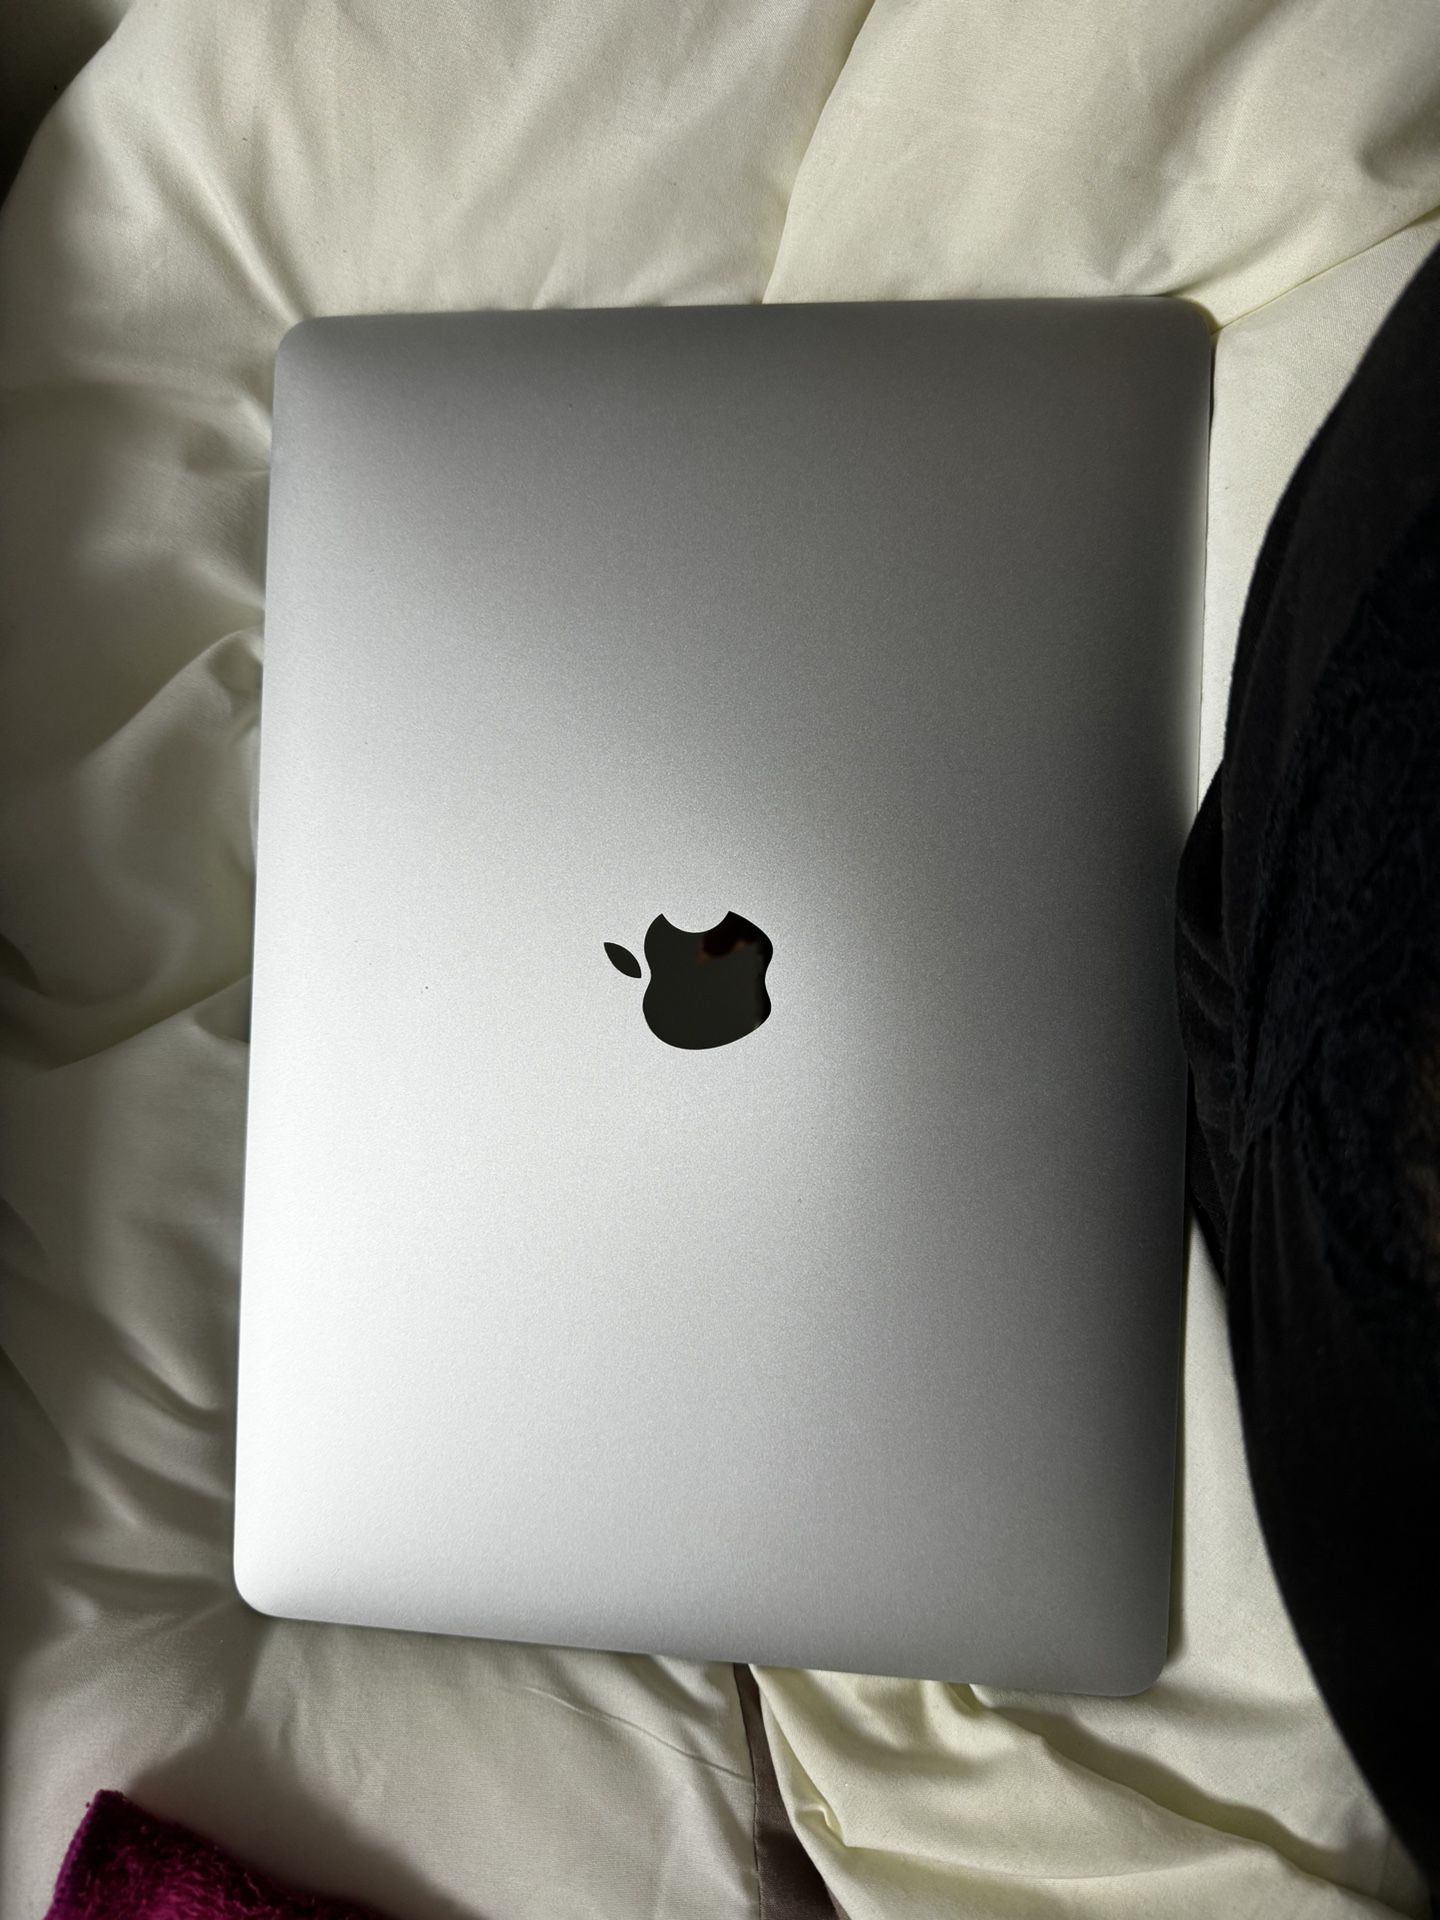 Apple Macbook PRO 13” 